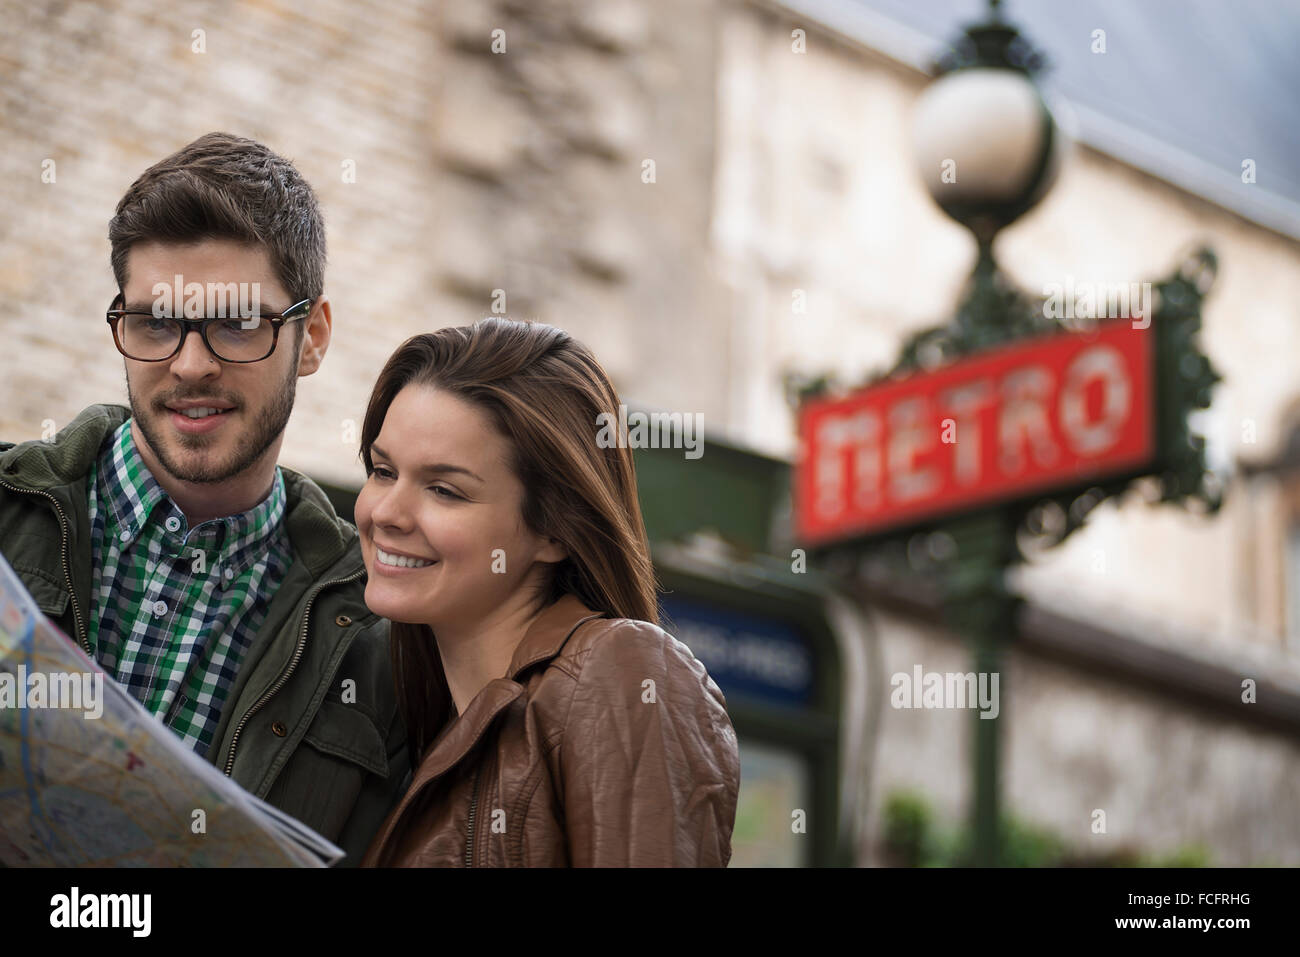 Un couple consultant une carte sur une rue de la ville, dans le cadre d'un signe de métro Art déco classique. Banque D'Images